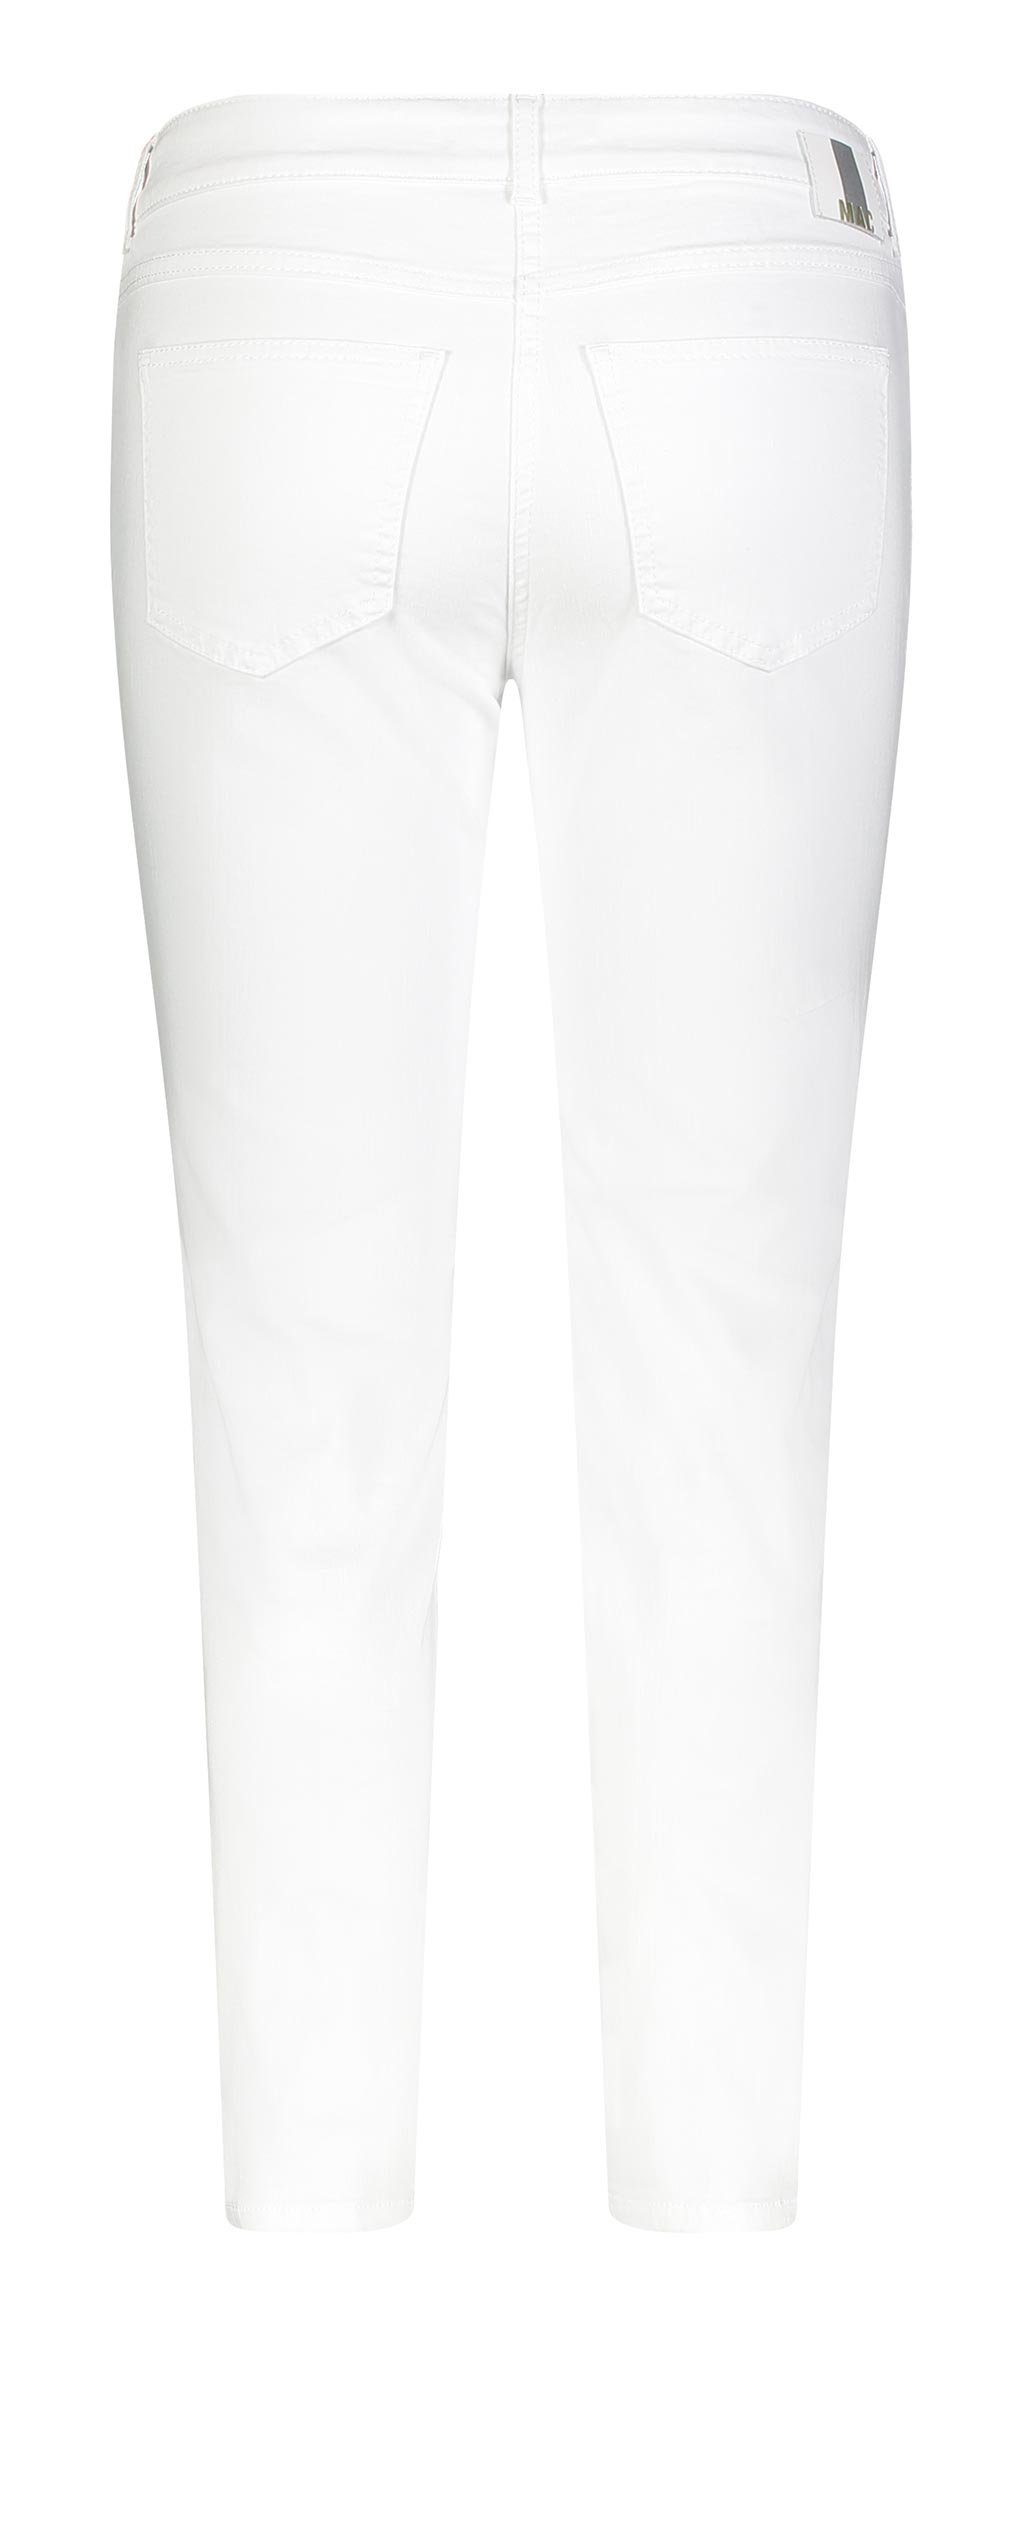 MAC Stretch-Jeans ANGELA SUMMER clean 5249-90-0392L white 7/8 MAC D010 denim